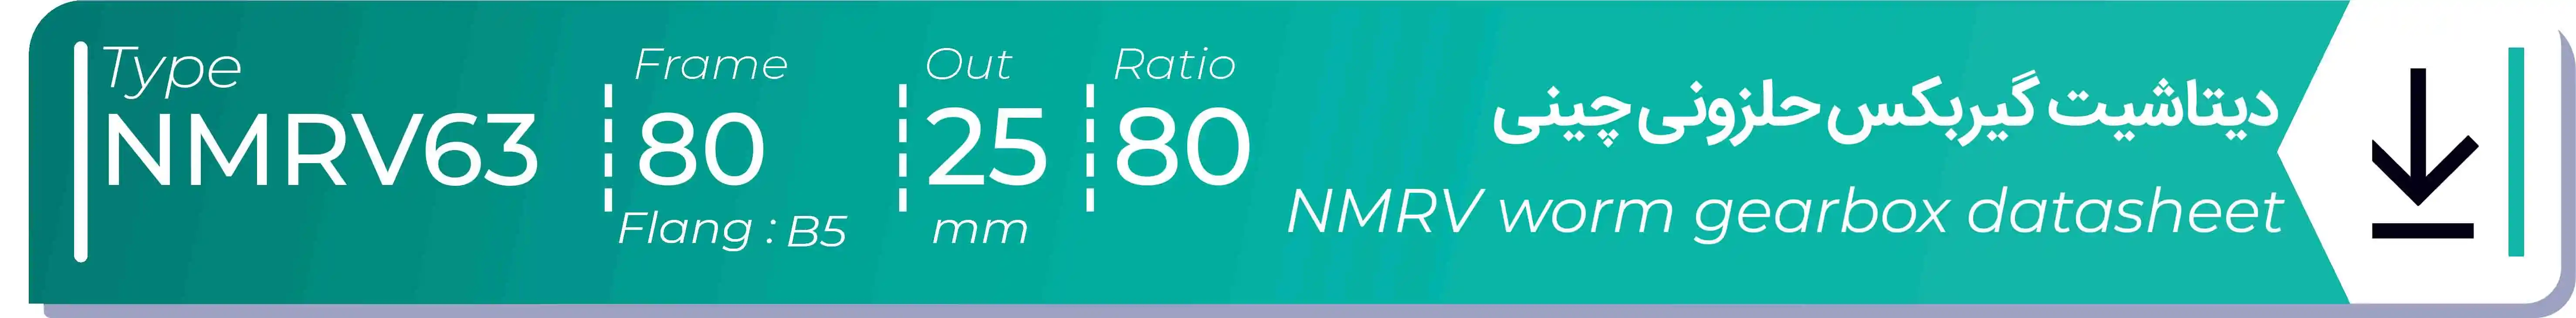  دیتاشیت و مشخصات فنی گیربکس حلزونی چینی   NMRV63  -  با خروجی 25- میلی متر و نسبت80 و فریم 80